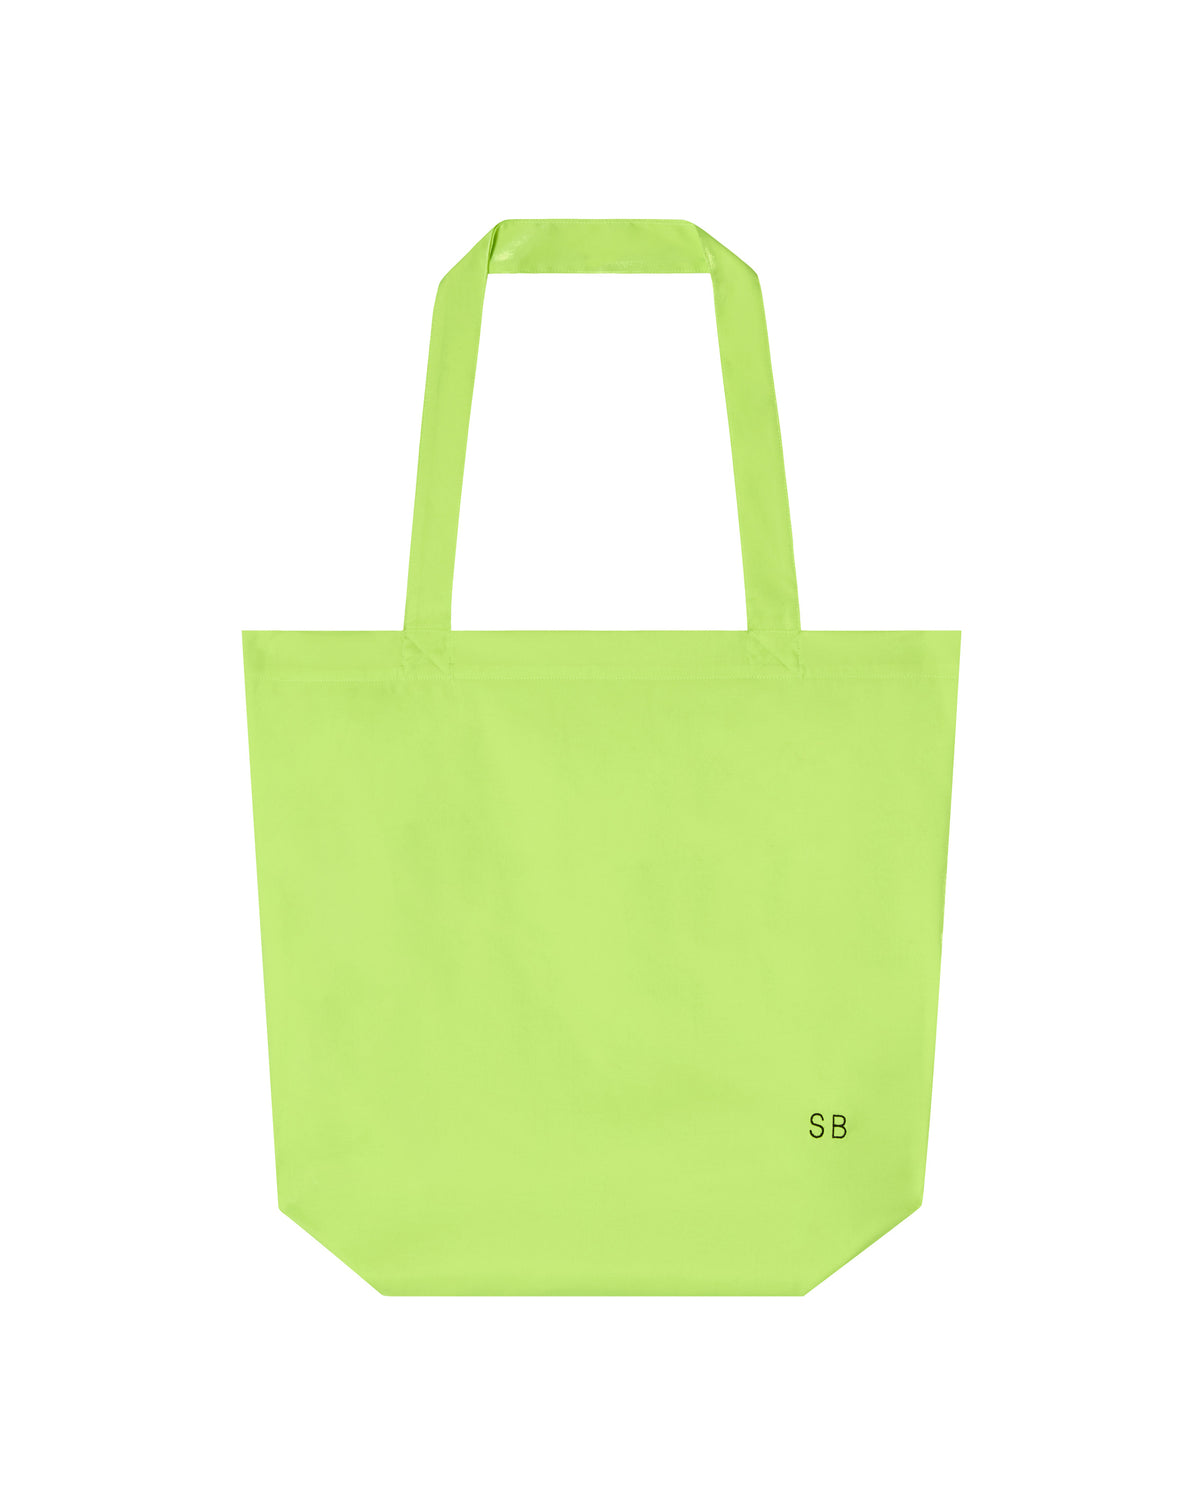 SB Tote Bag - Neon Yellow